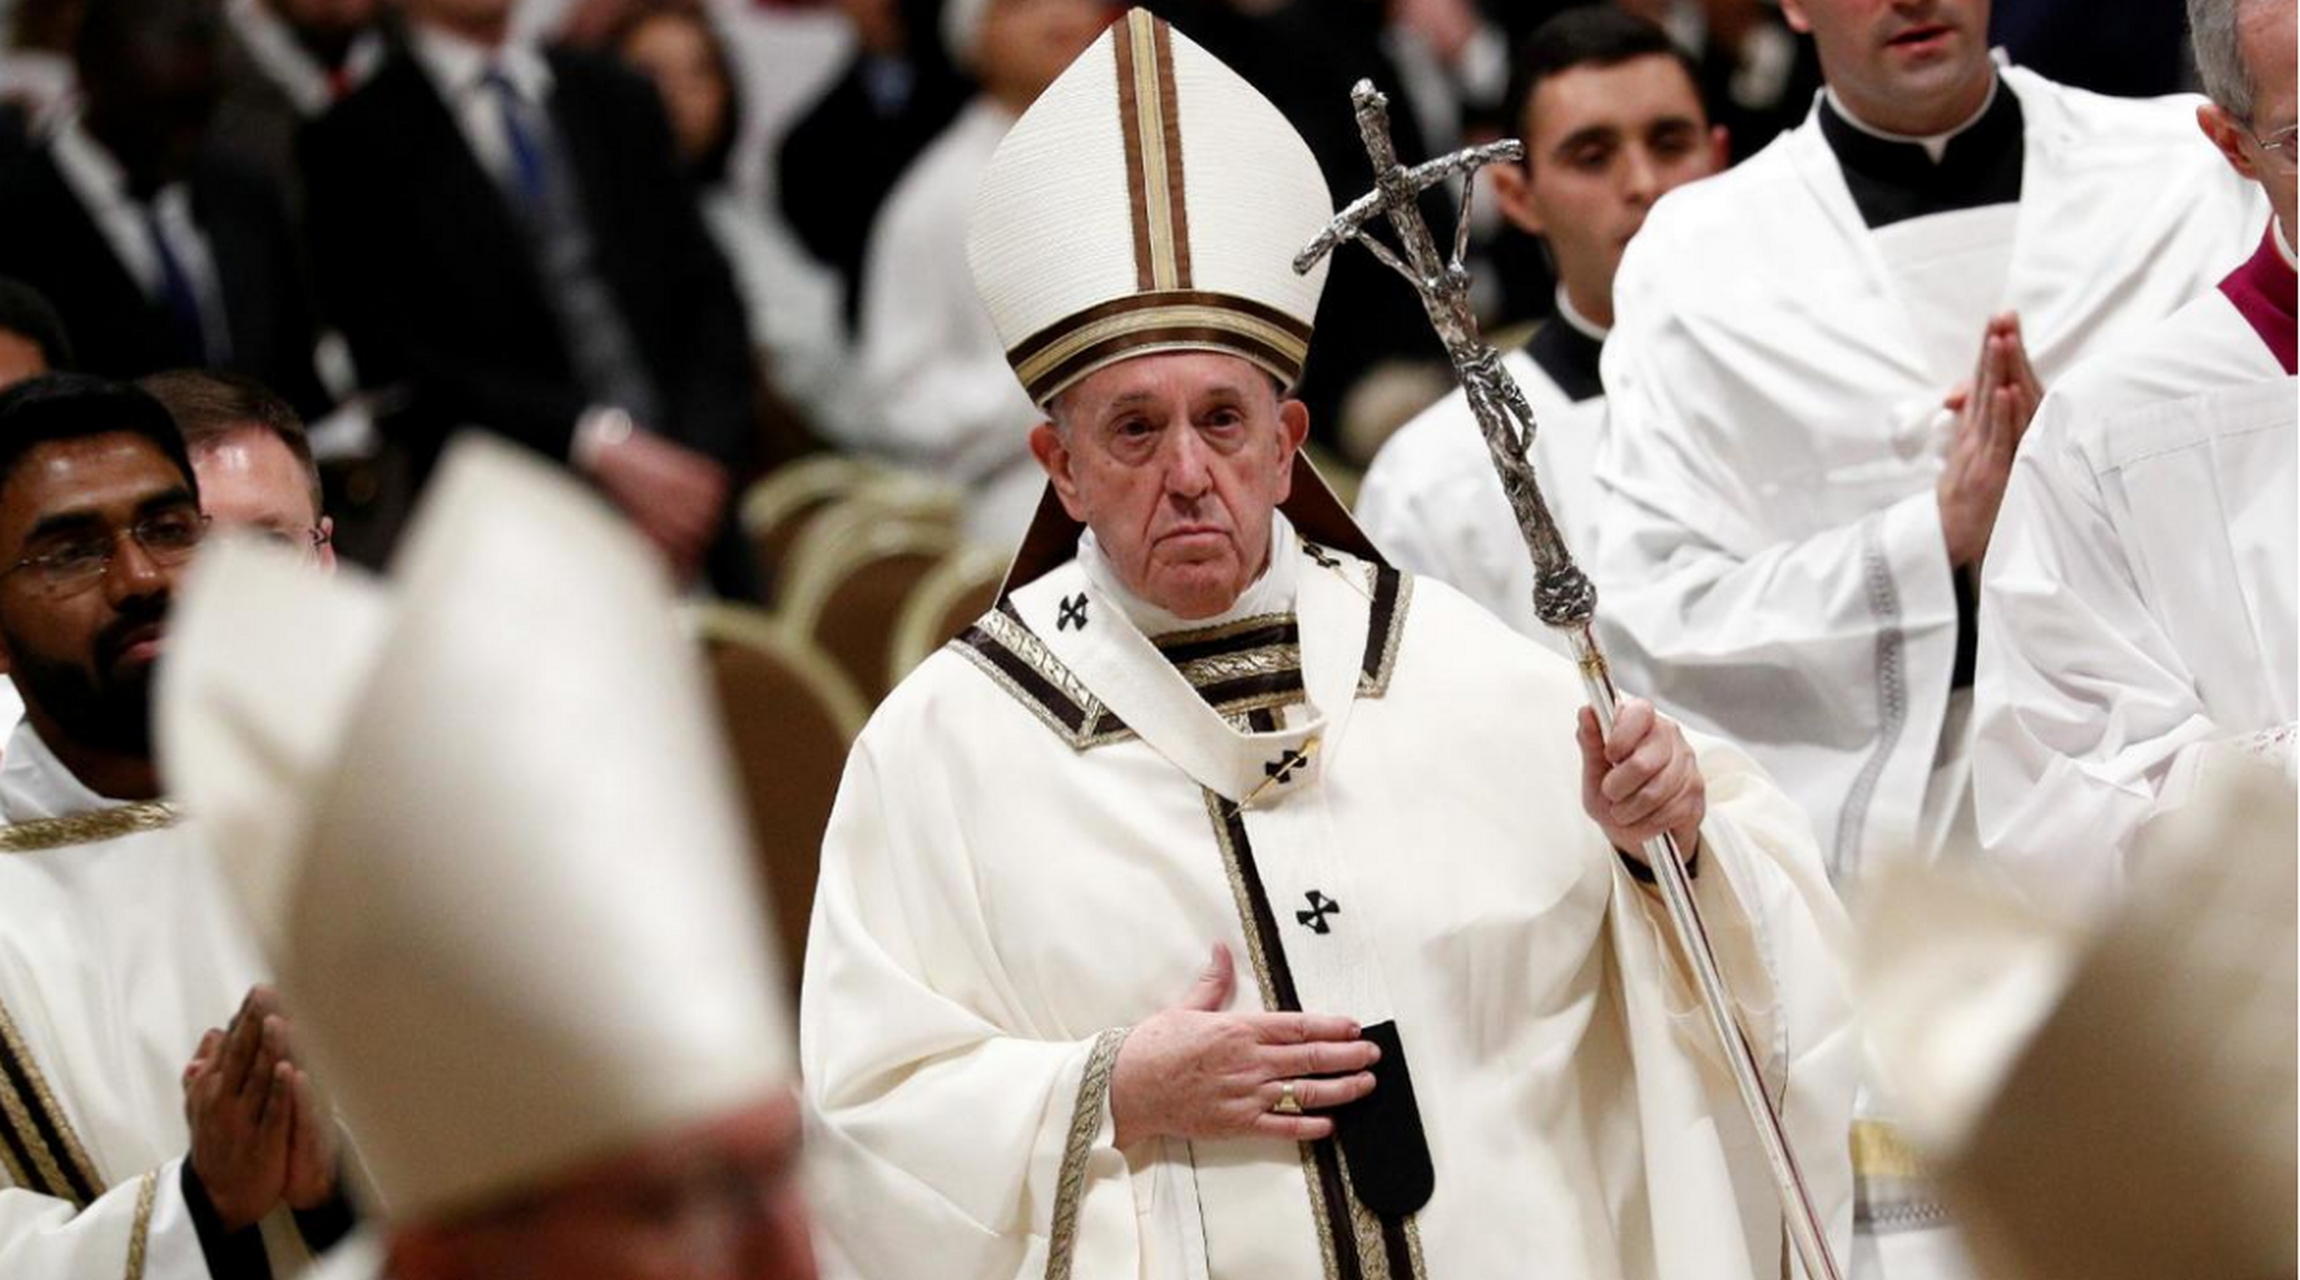 近日,乌克兰总统泽连斯基访问意大利时,与梵蒂冈教皇会面并寻求和平